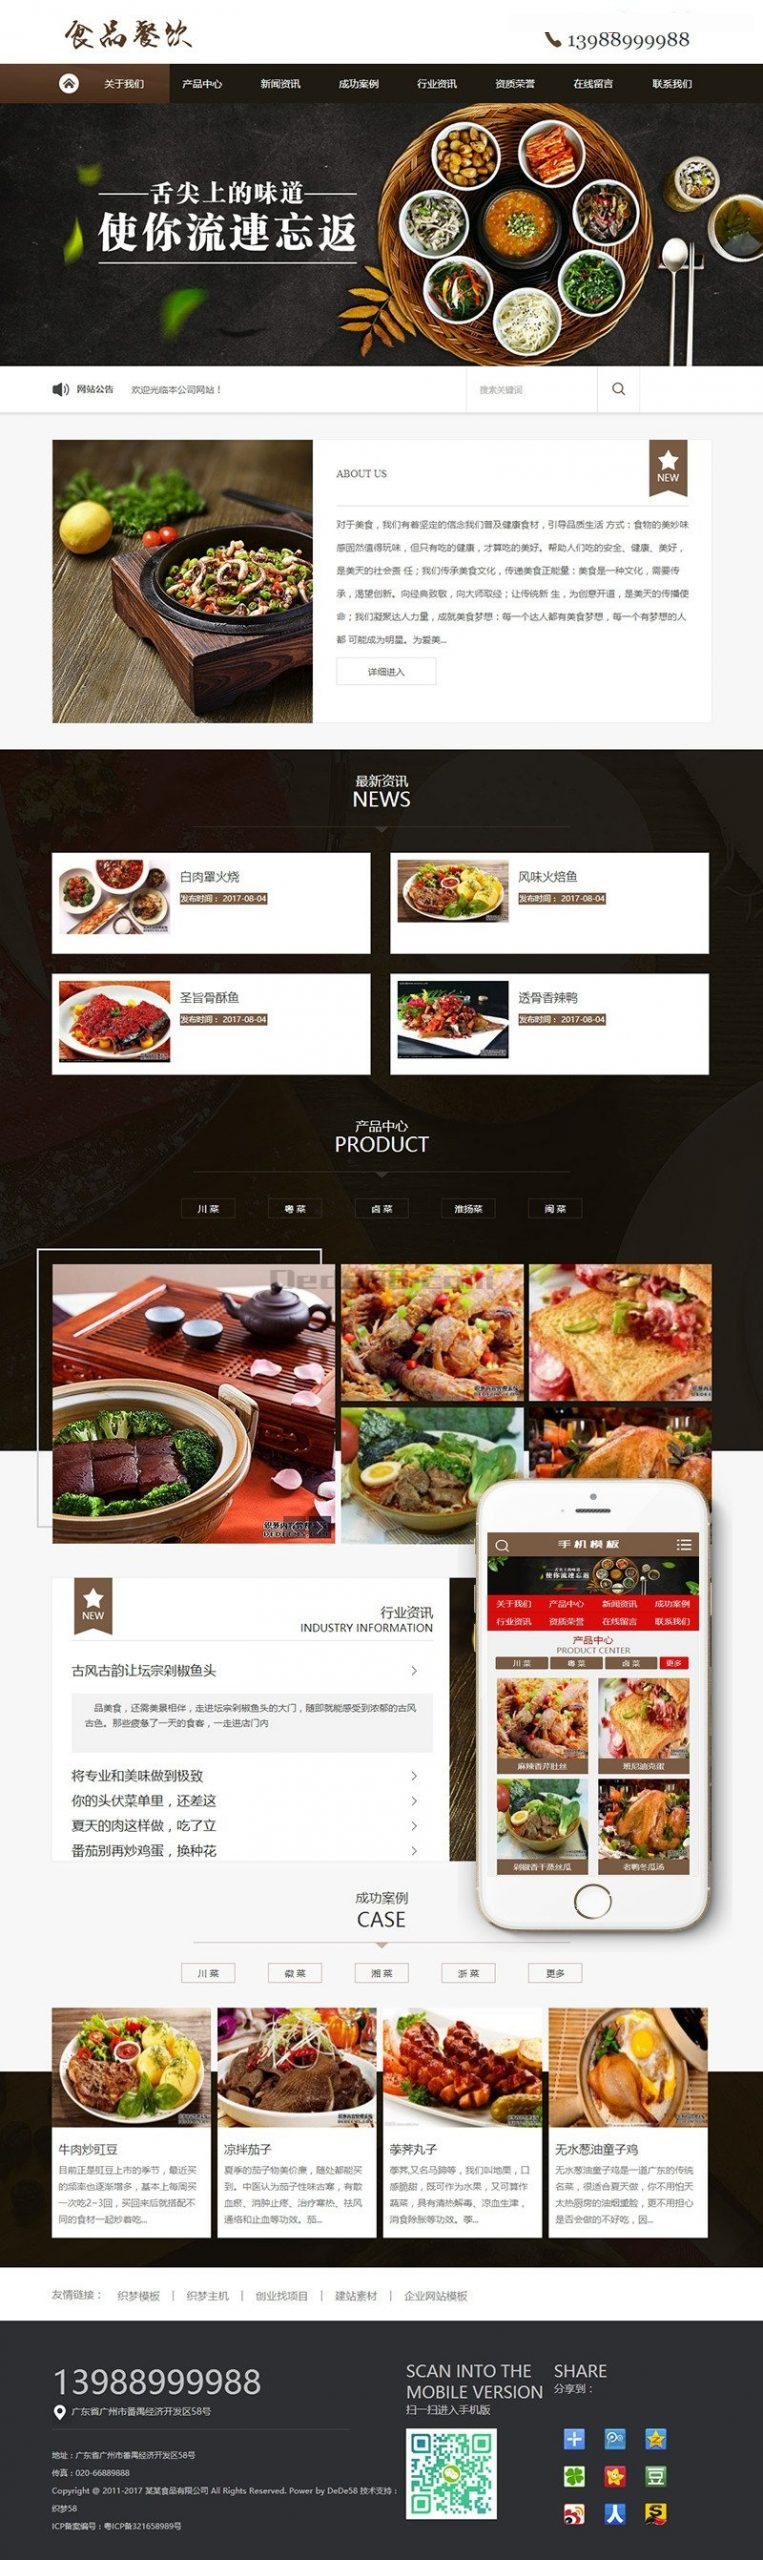 2021-07-10健康食品餐饮美食类网站源码 dedecms织梦模板 (带手机端)-蟹程序